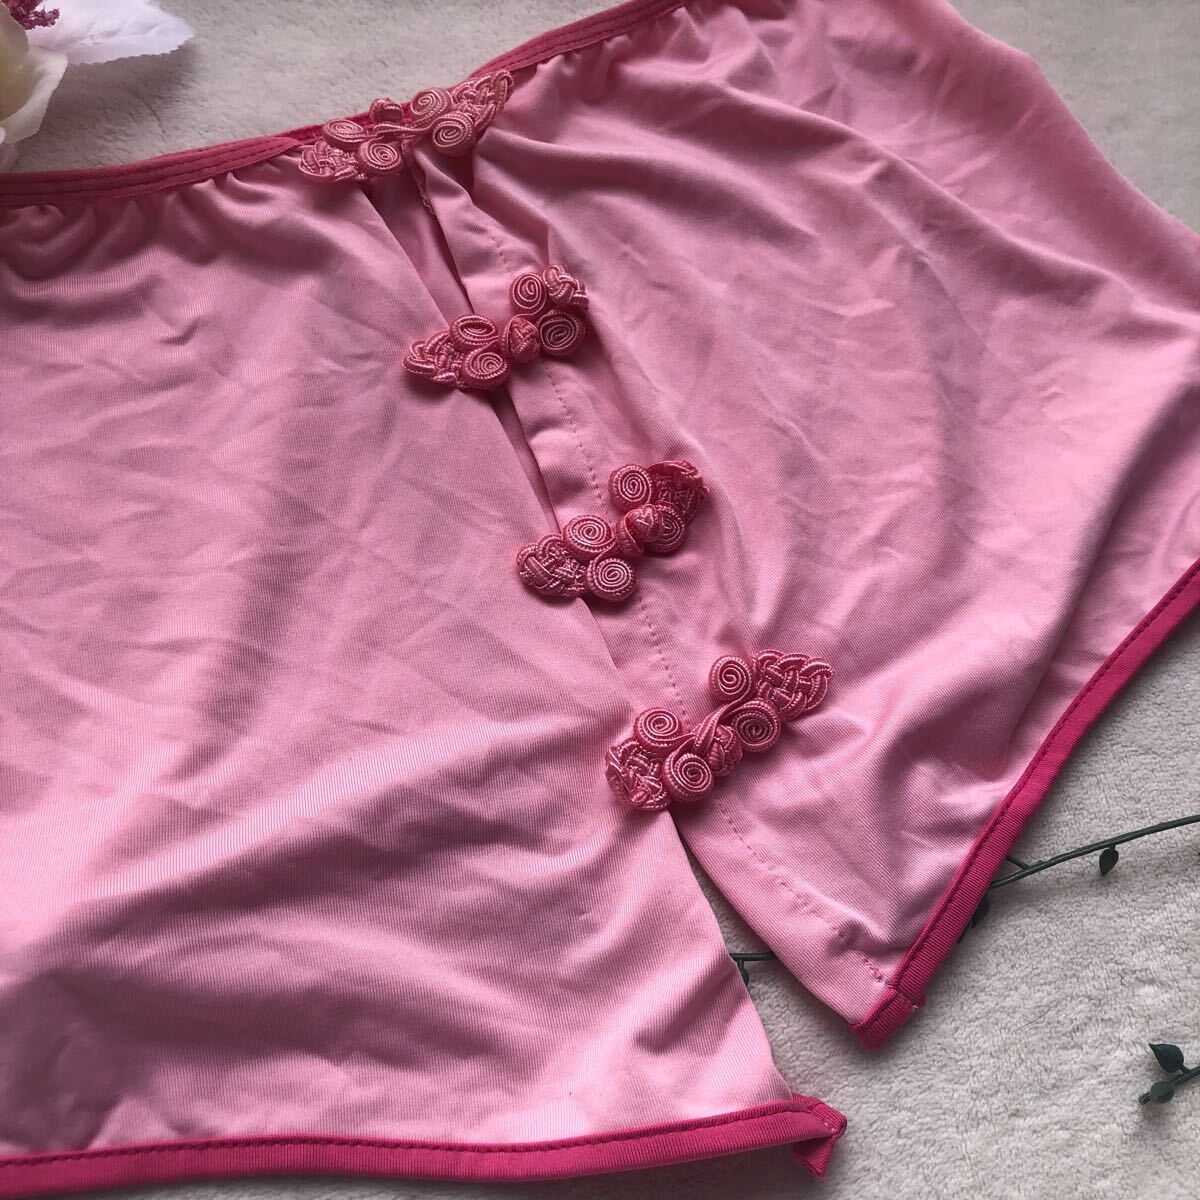 新品 エロ可愛い トップス ベビーピンク コスチューム コスプレ ランジェリー 下着 の画像2